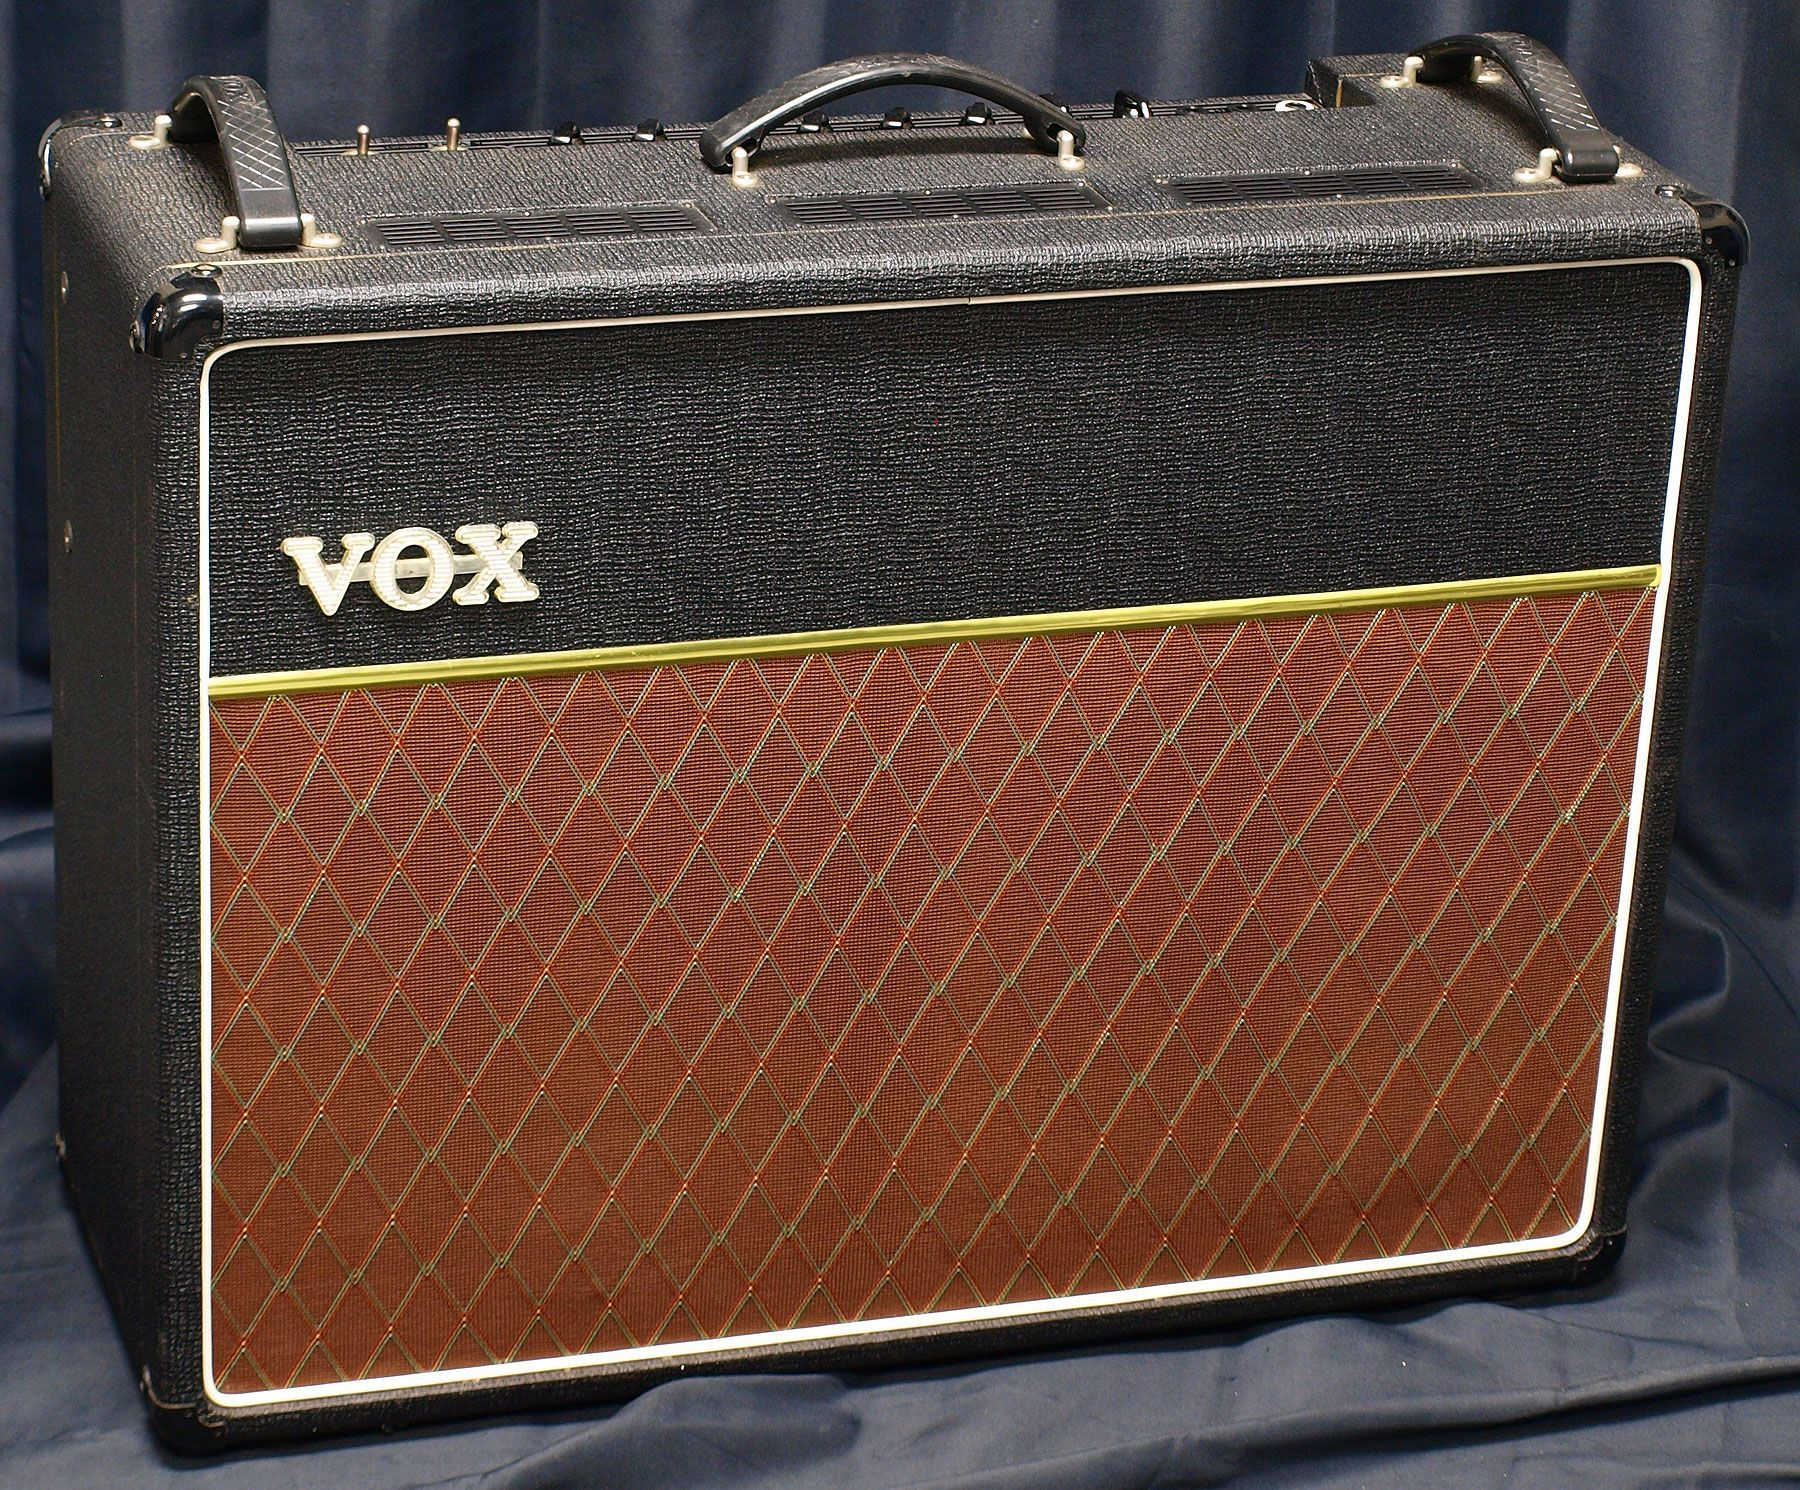 VOX ギターアンプコンボAC30 6TBX中古品()売却済みです。あしからずご了承ください。 | MUSIC PLANT WEBSHOP